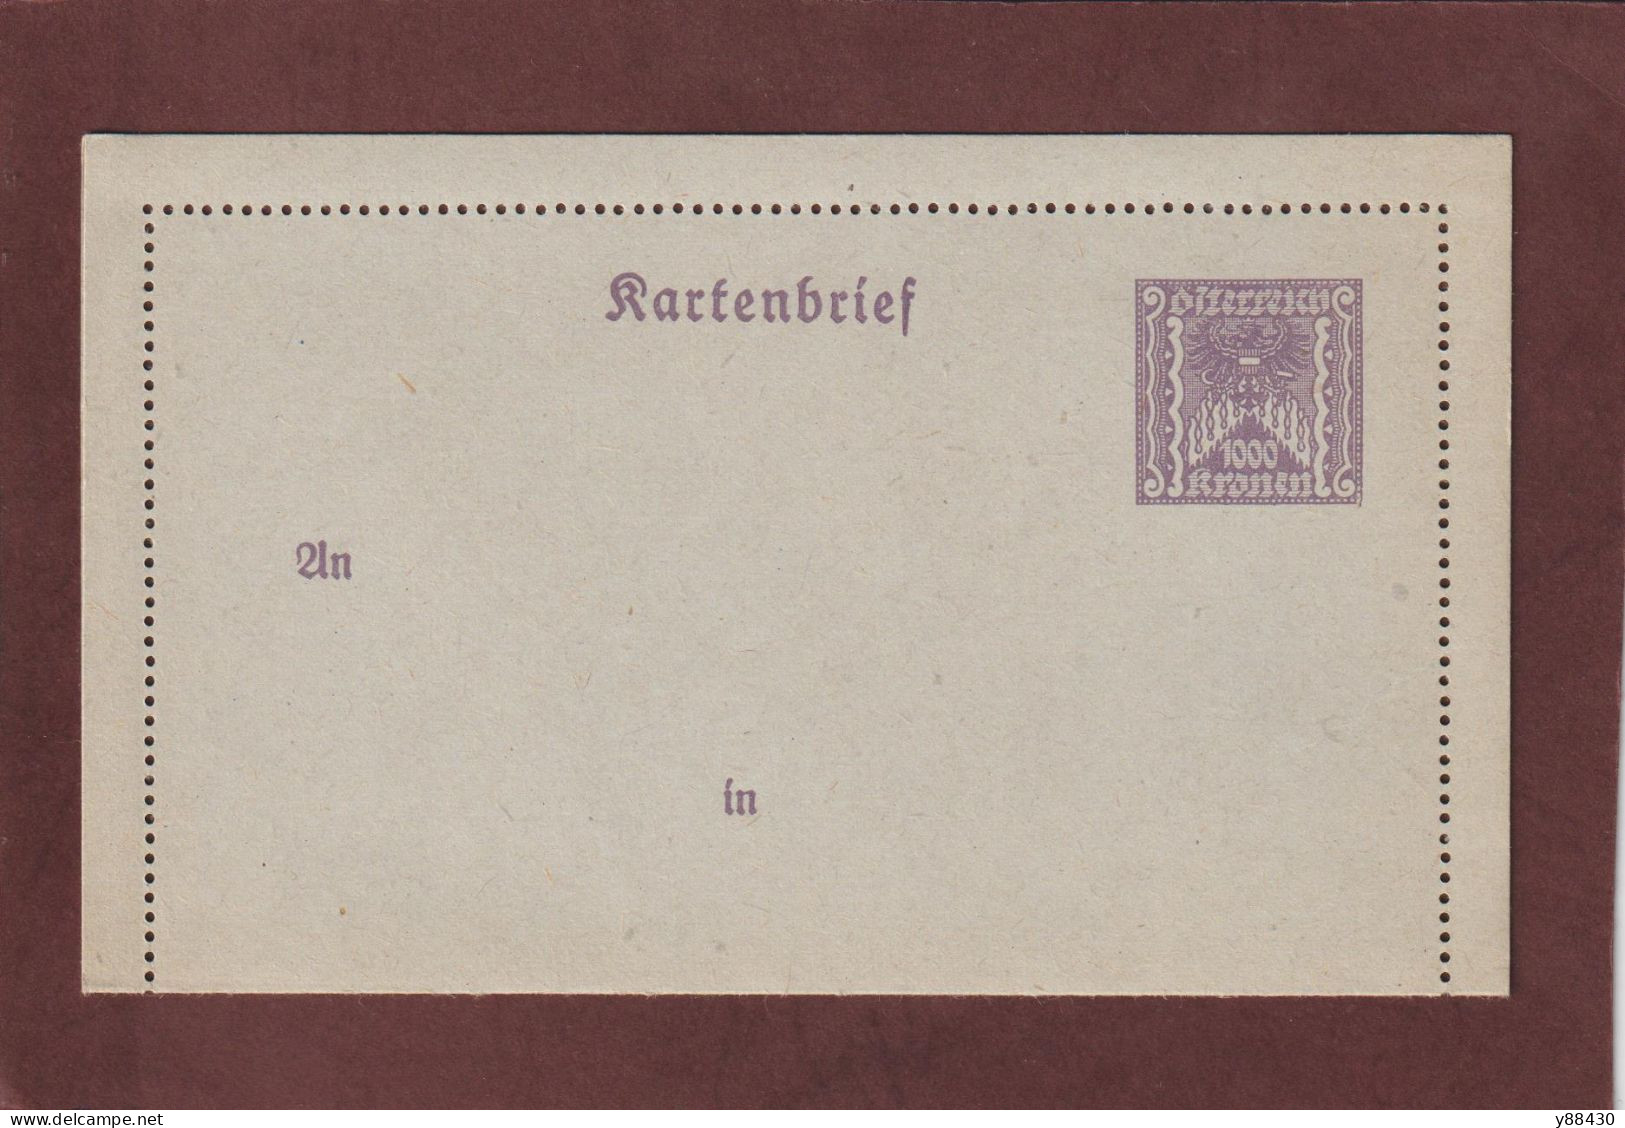 AUTRICHE - Entier Postal Neuf - 1910/1930 - Entier Sur Carte Lettre Gommé  - 1000k. Violet  - 5 Scan - Cartes-lettres